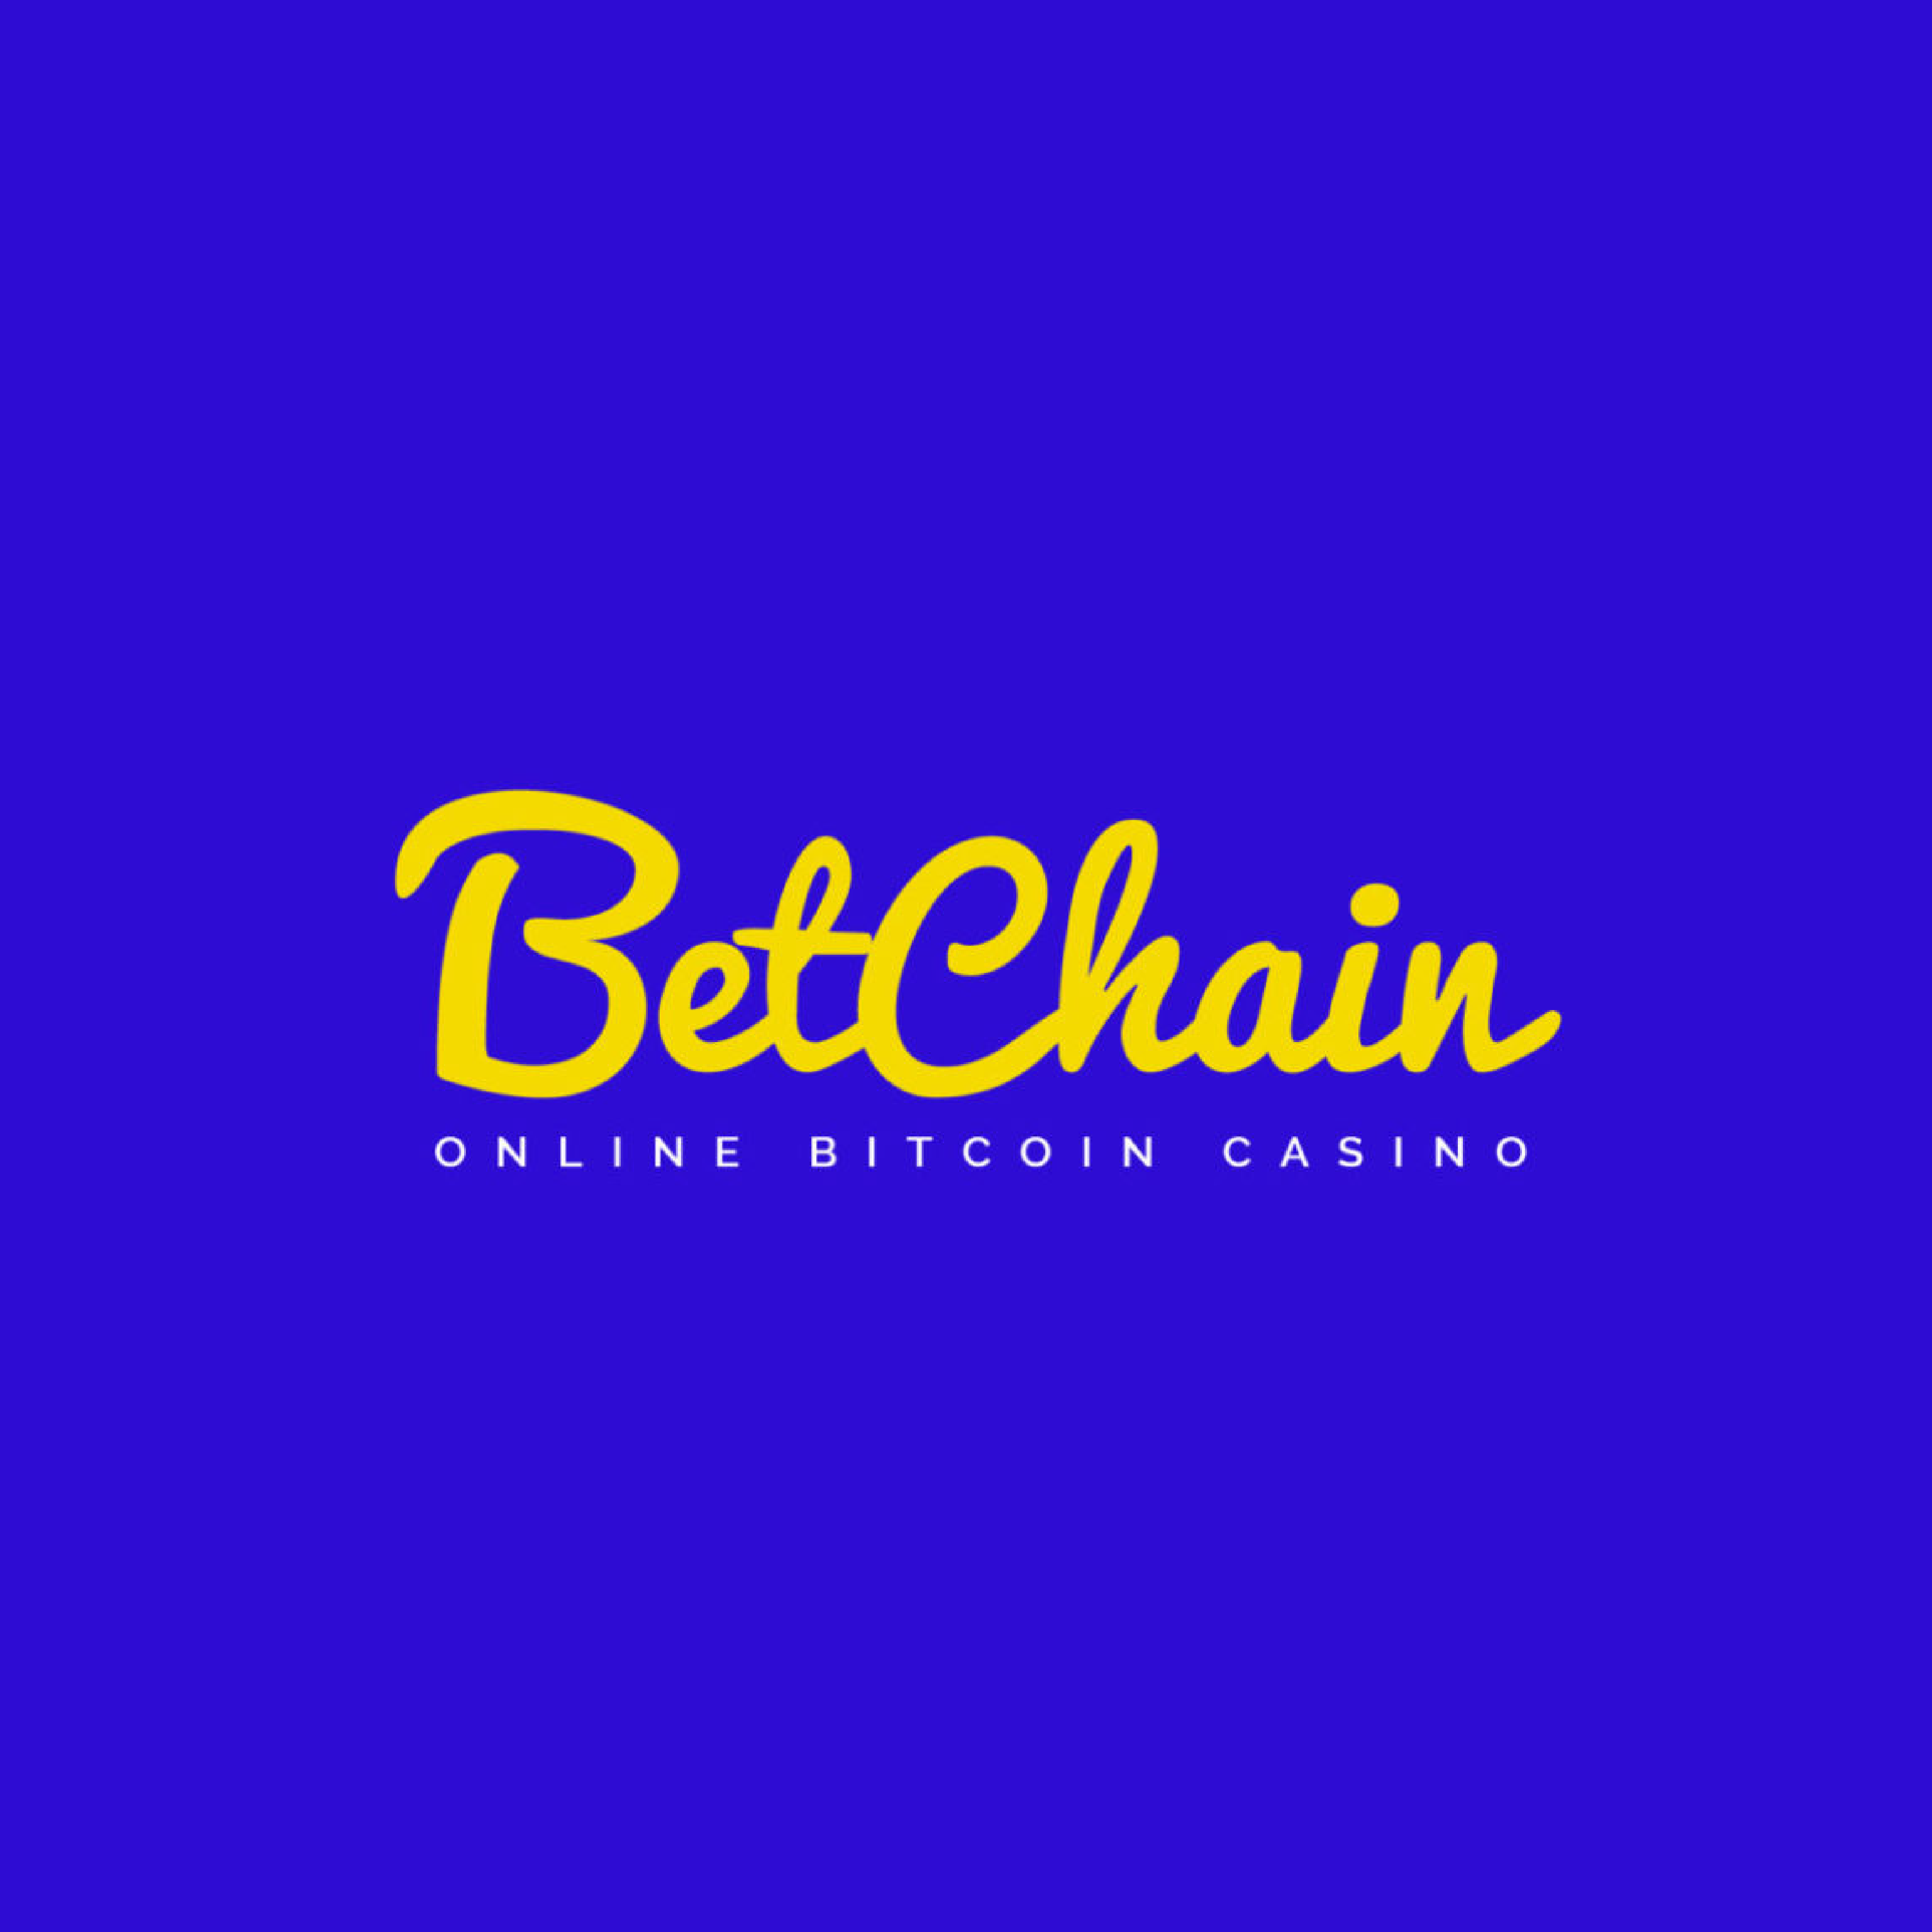 New bitcoin online casino